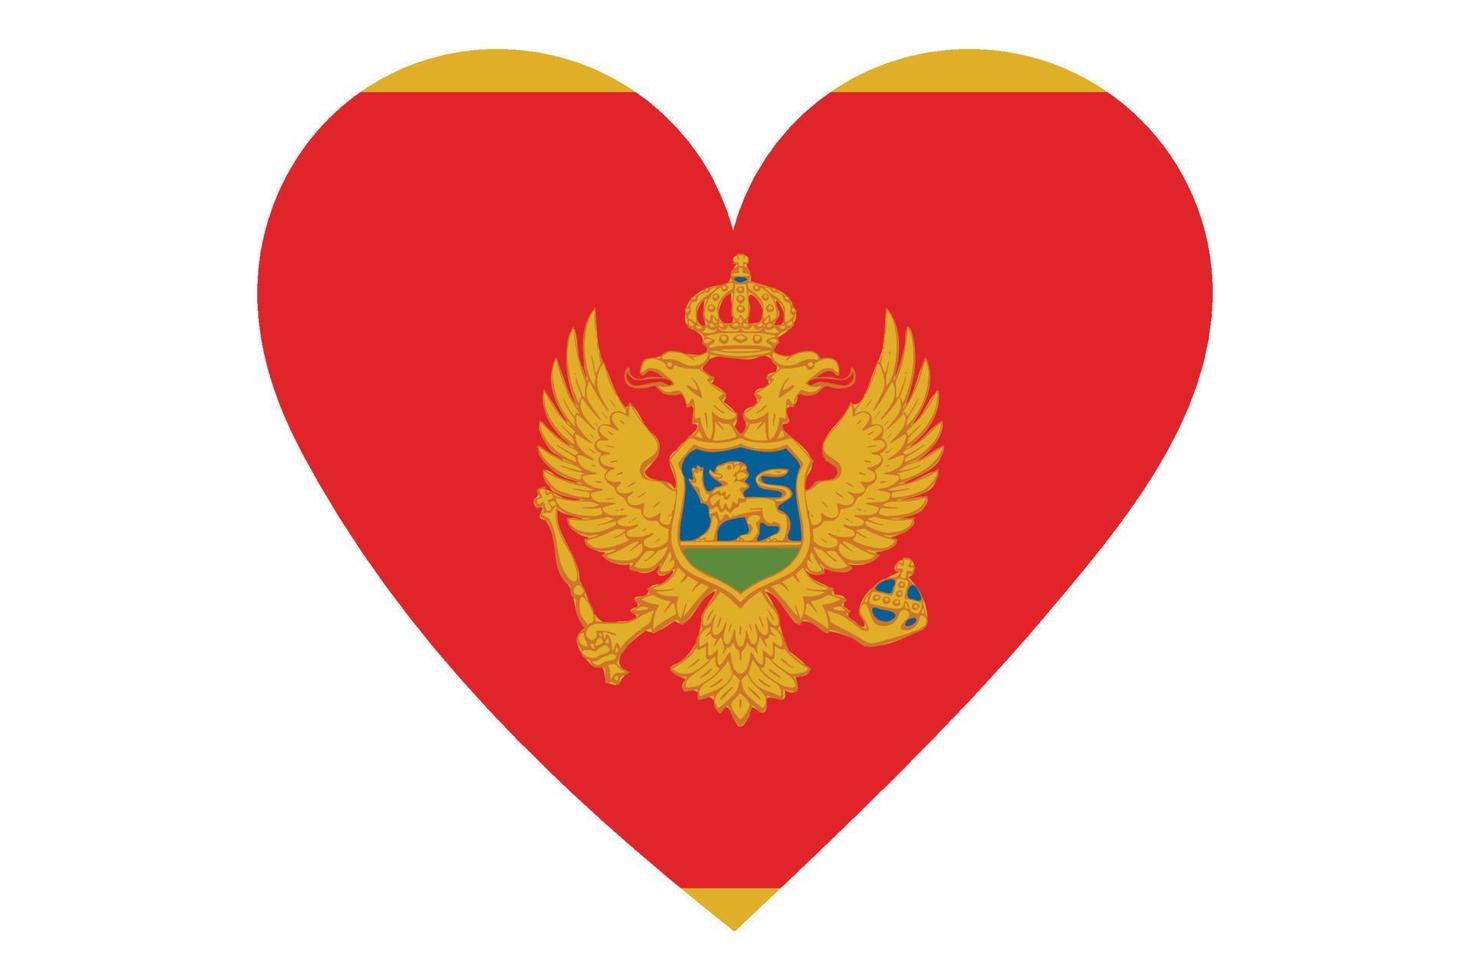 Heart flag vector of Montenegro on white background.